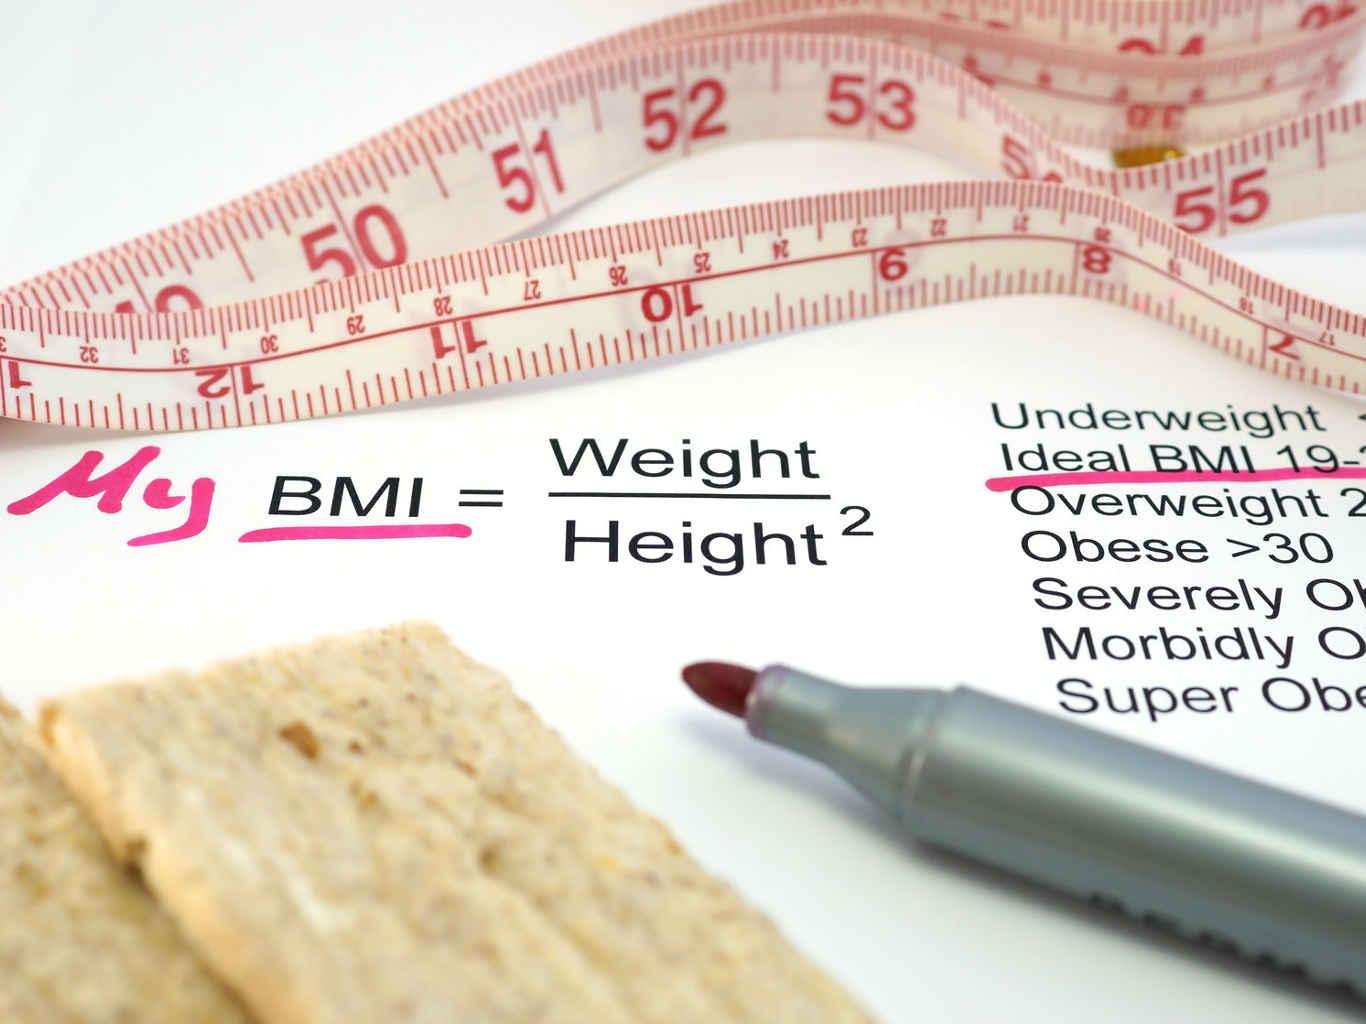 BMI = weight / height ^ 2